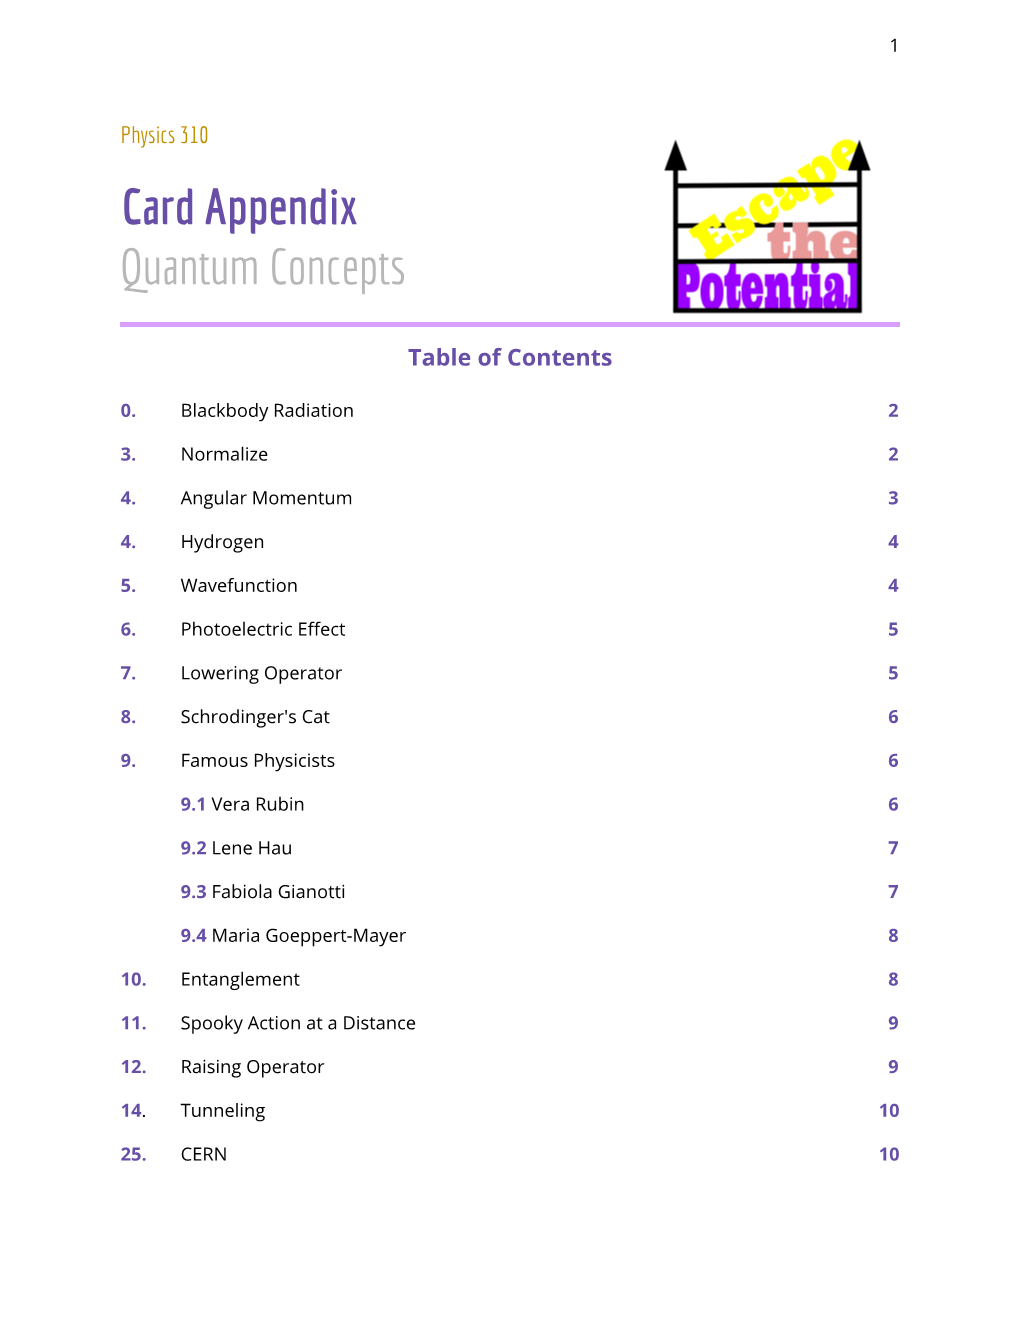 Card Appendix Quantum Concepts